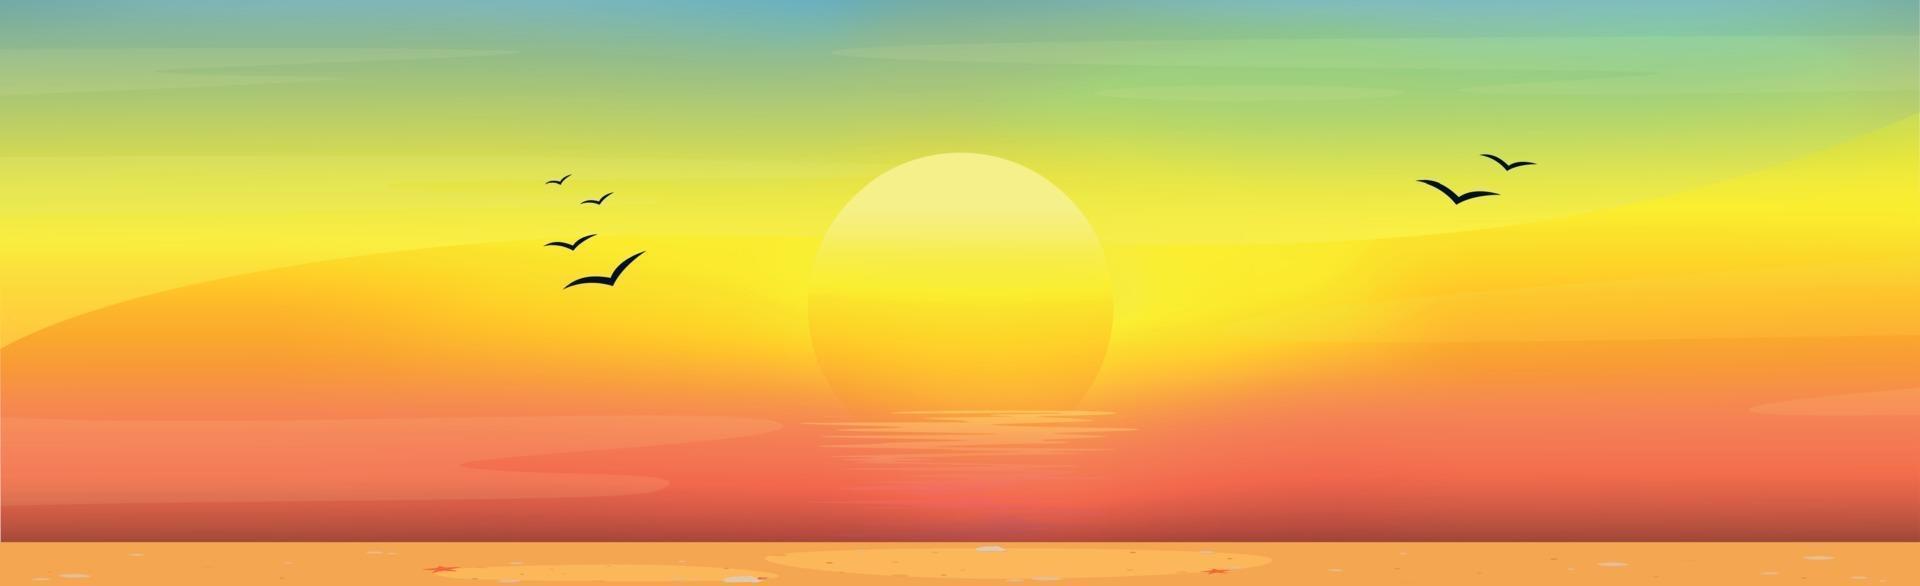 Illustration eines sonnigen Sandstrandes bei Sonnenuntergang vektor